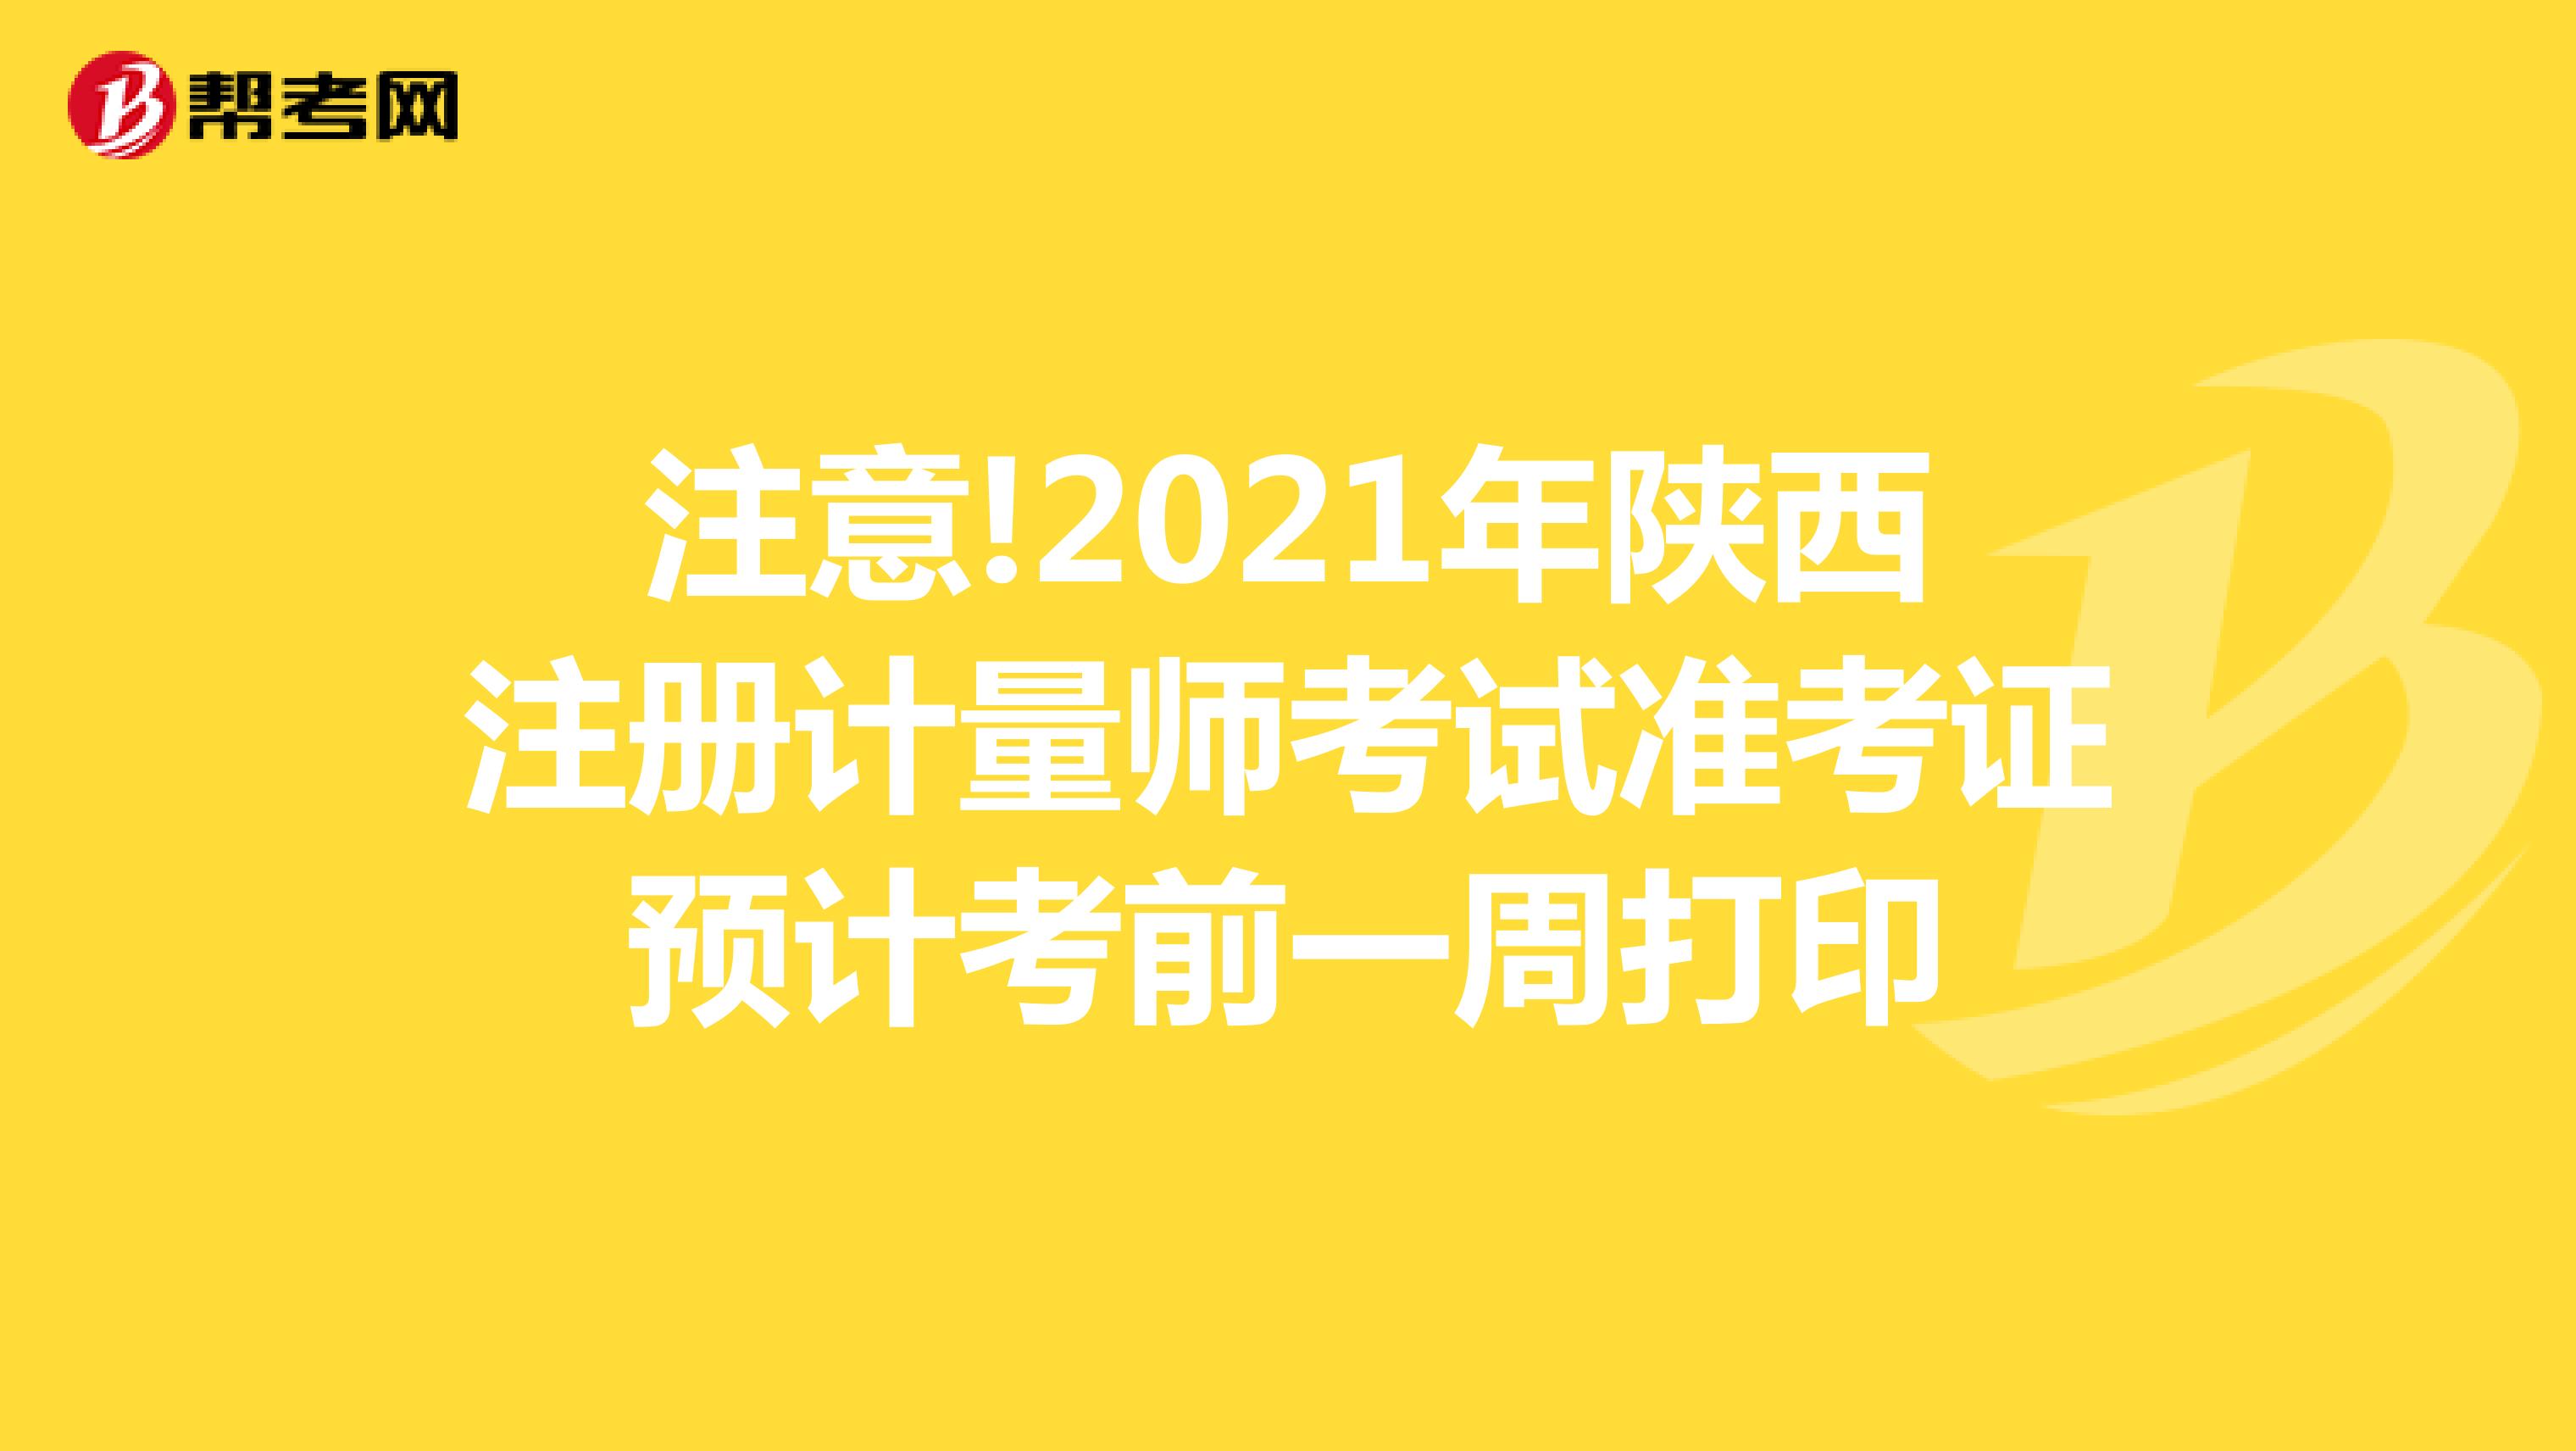 注意!2021年陕西注册计量师考试准考证预计考前一周打印